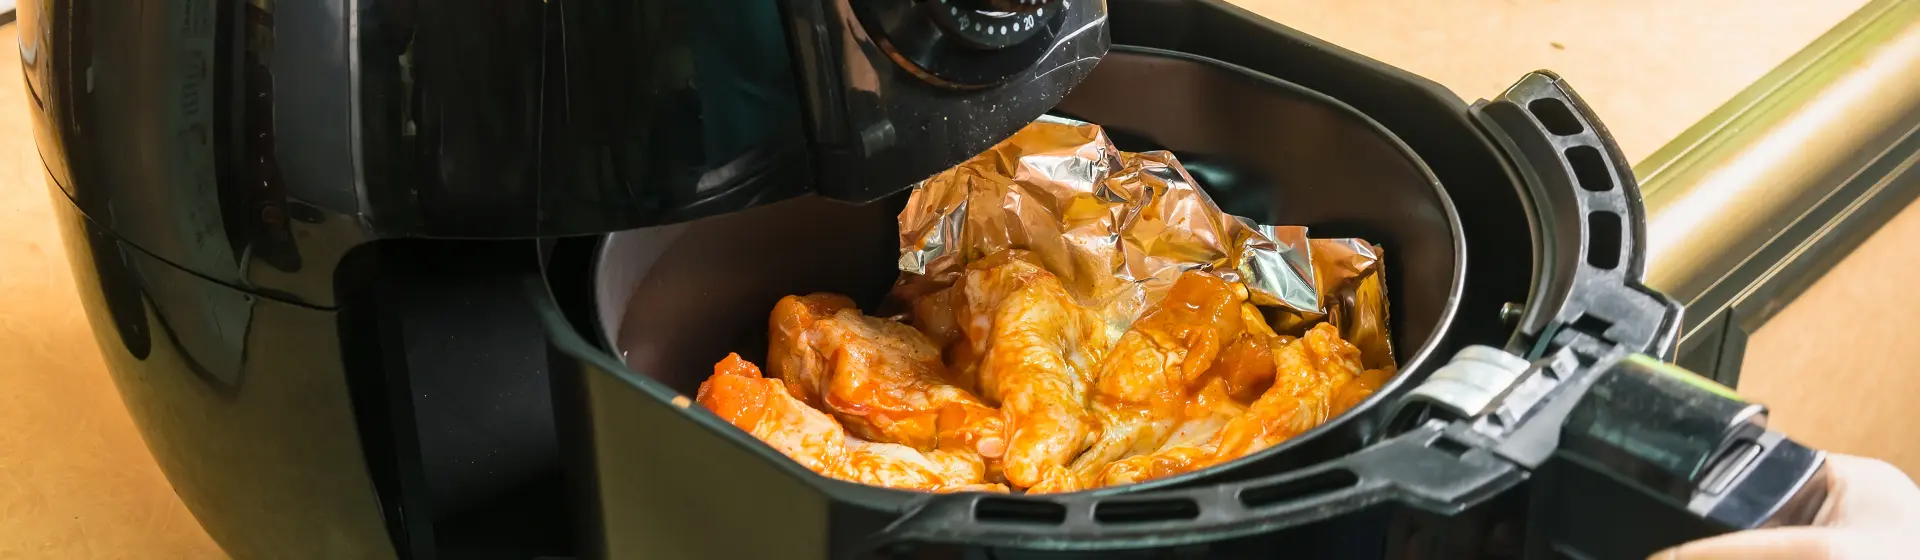 Air fryer barata: conheça as fritadeiras de melhor custo-benefício